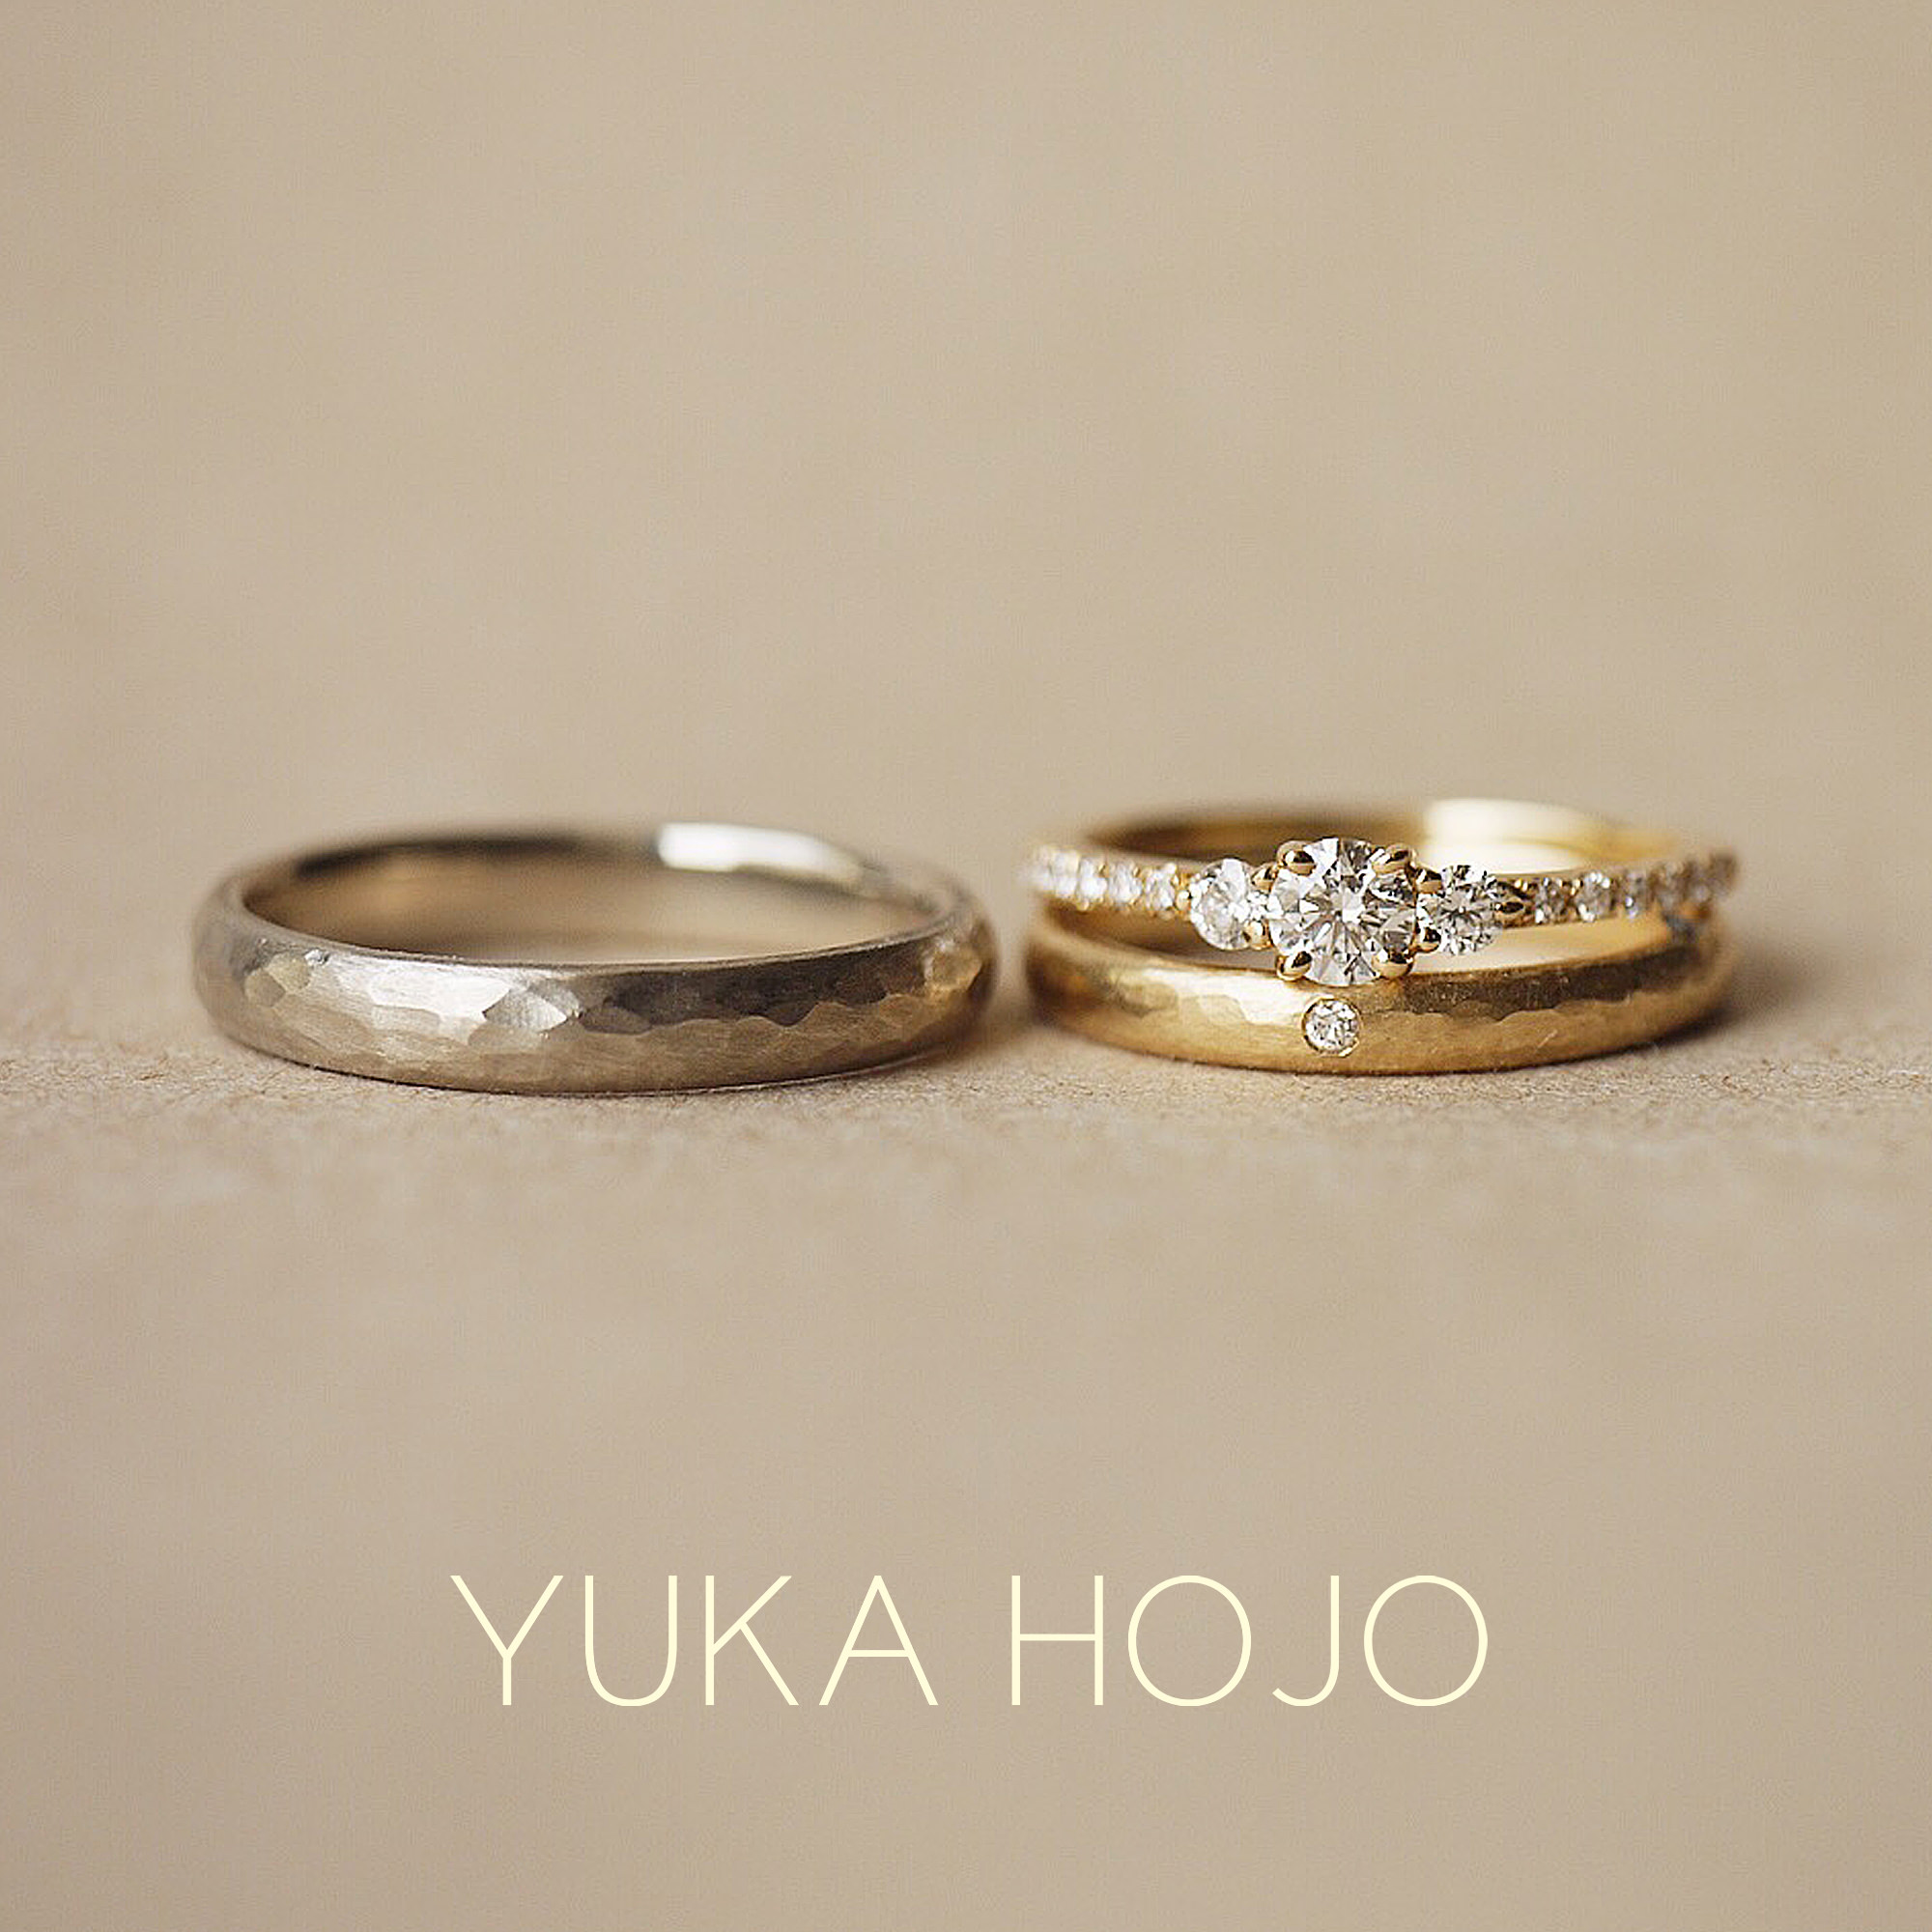 YUKA HOJOユカホウジョウの婚約指輪でエンゲージリングのCometコメットと結婚指輪でマリッジリングのPassage of timeパッセージオブタイム